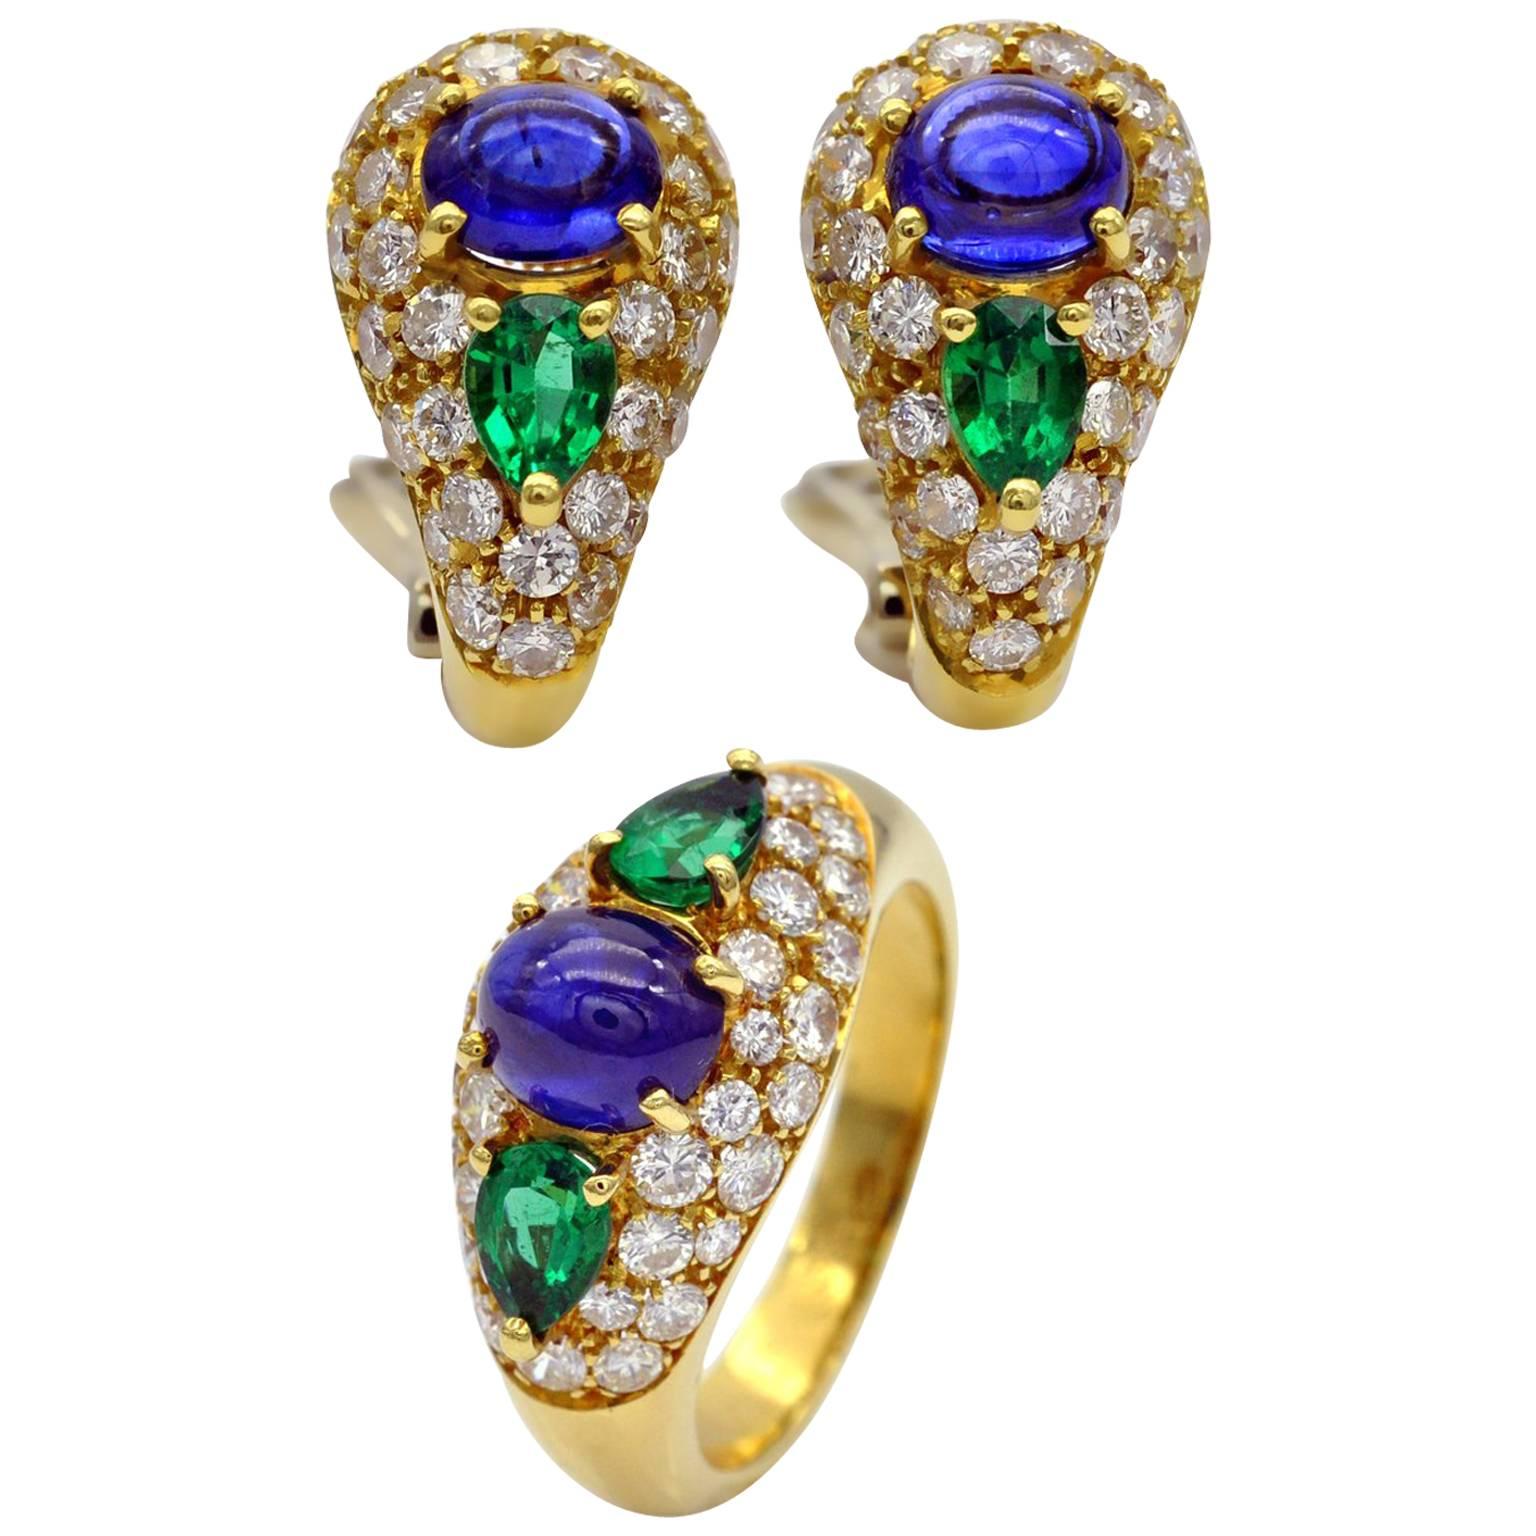 Ohrringe und Ring aus 18 Karat Gold mit Saphiren, Smaragden und Diamanten